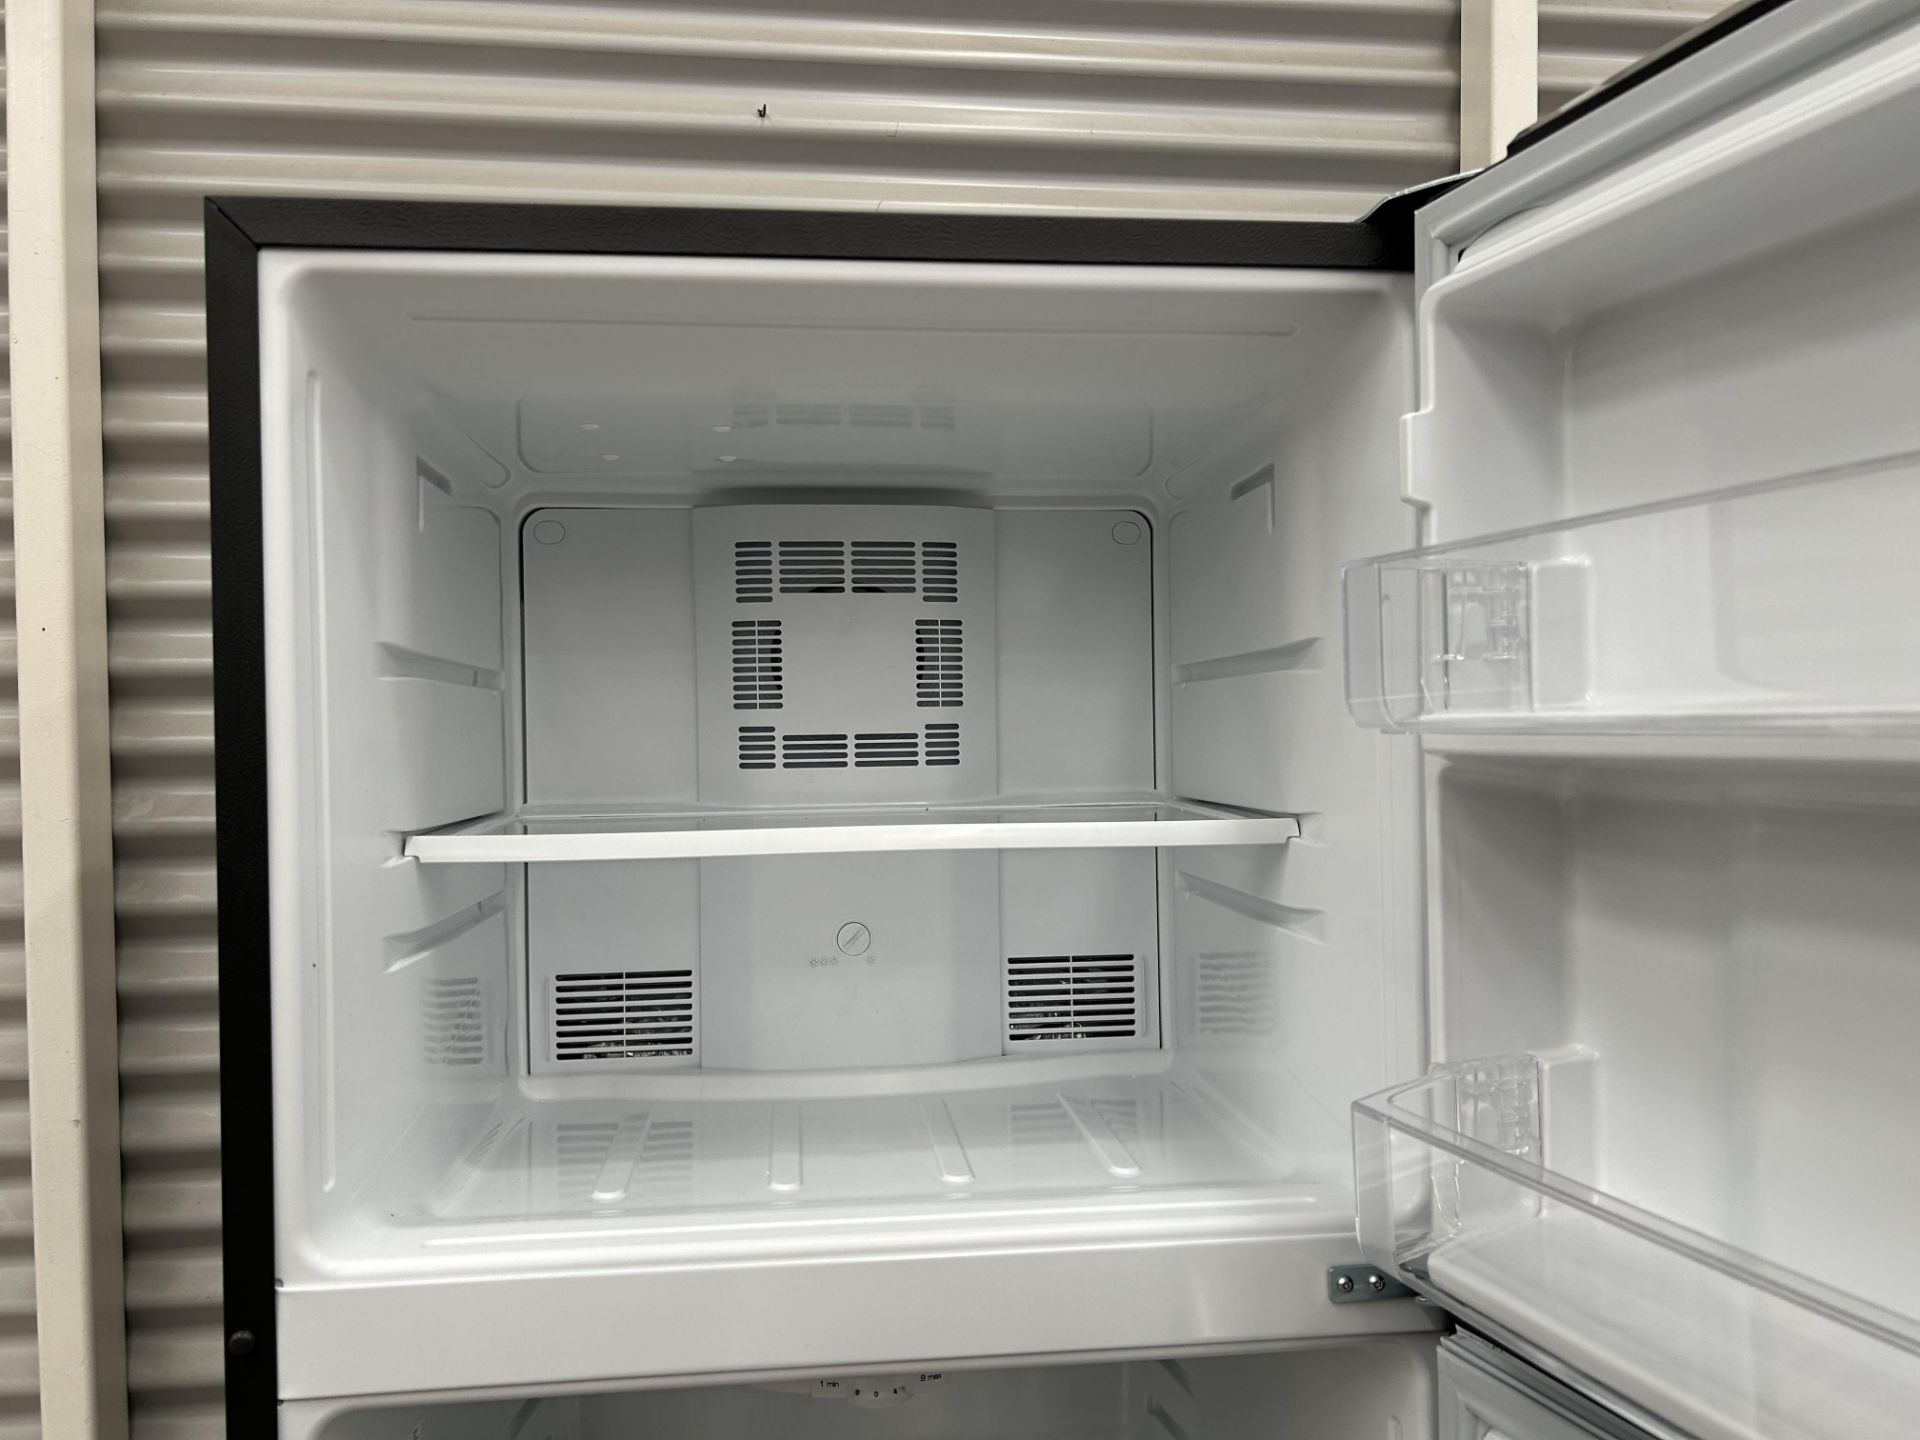 Lote de 2 refrigeradores contiene: 1 Refrigerador con dispensador de agua Marca MABE, Modelo RME360 - Image 8 of 12